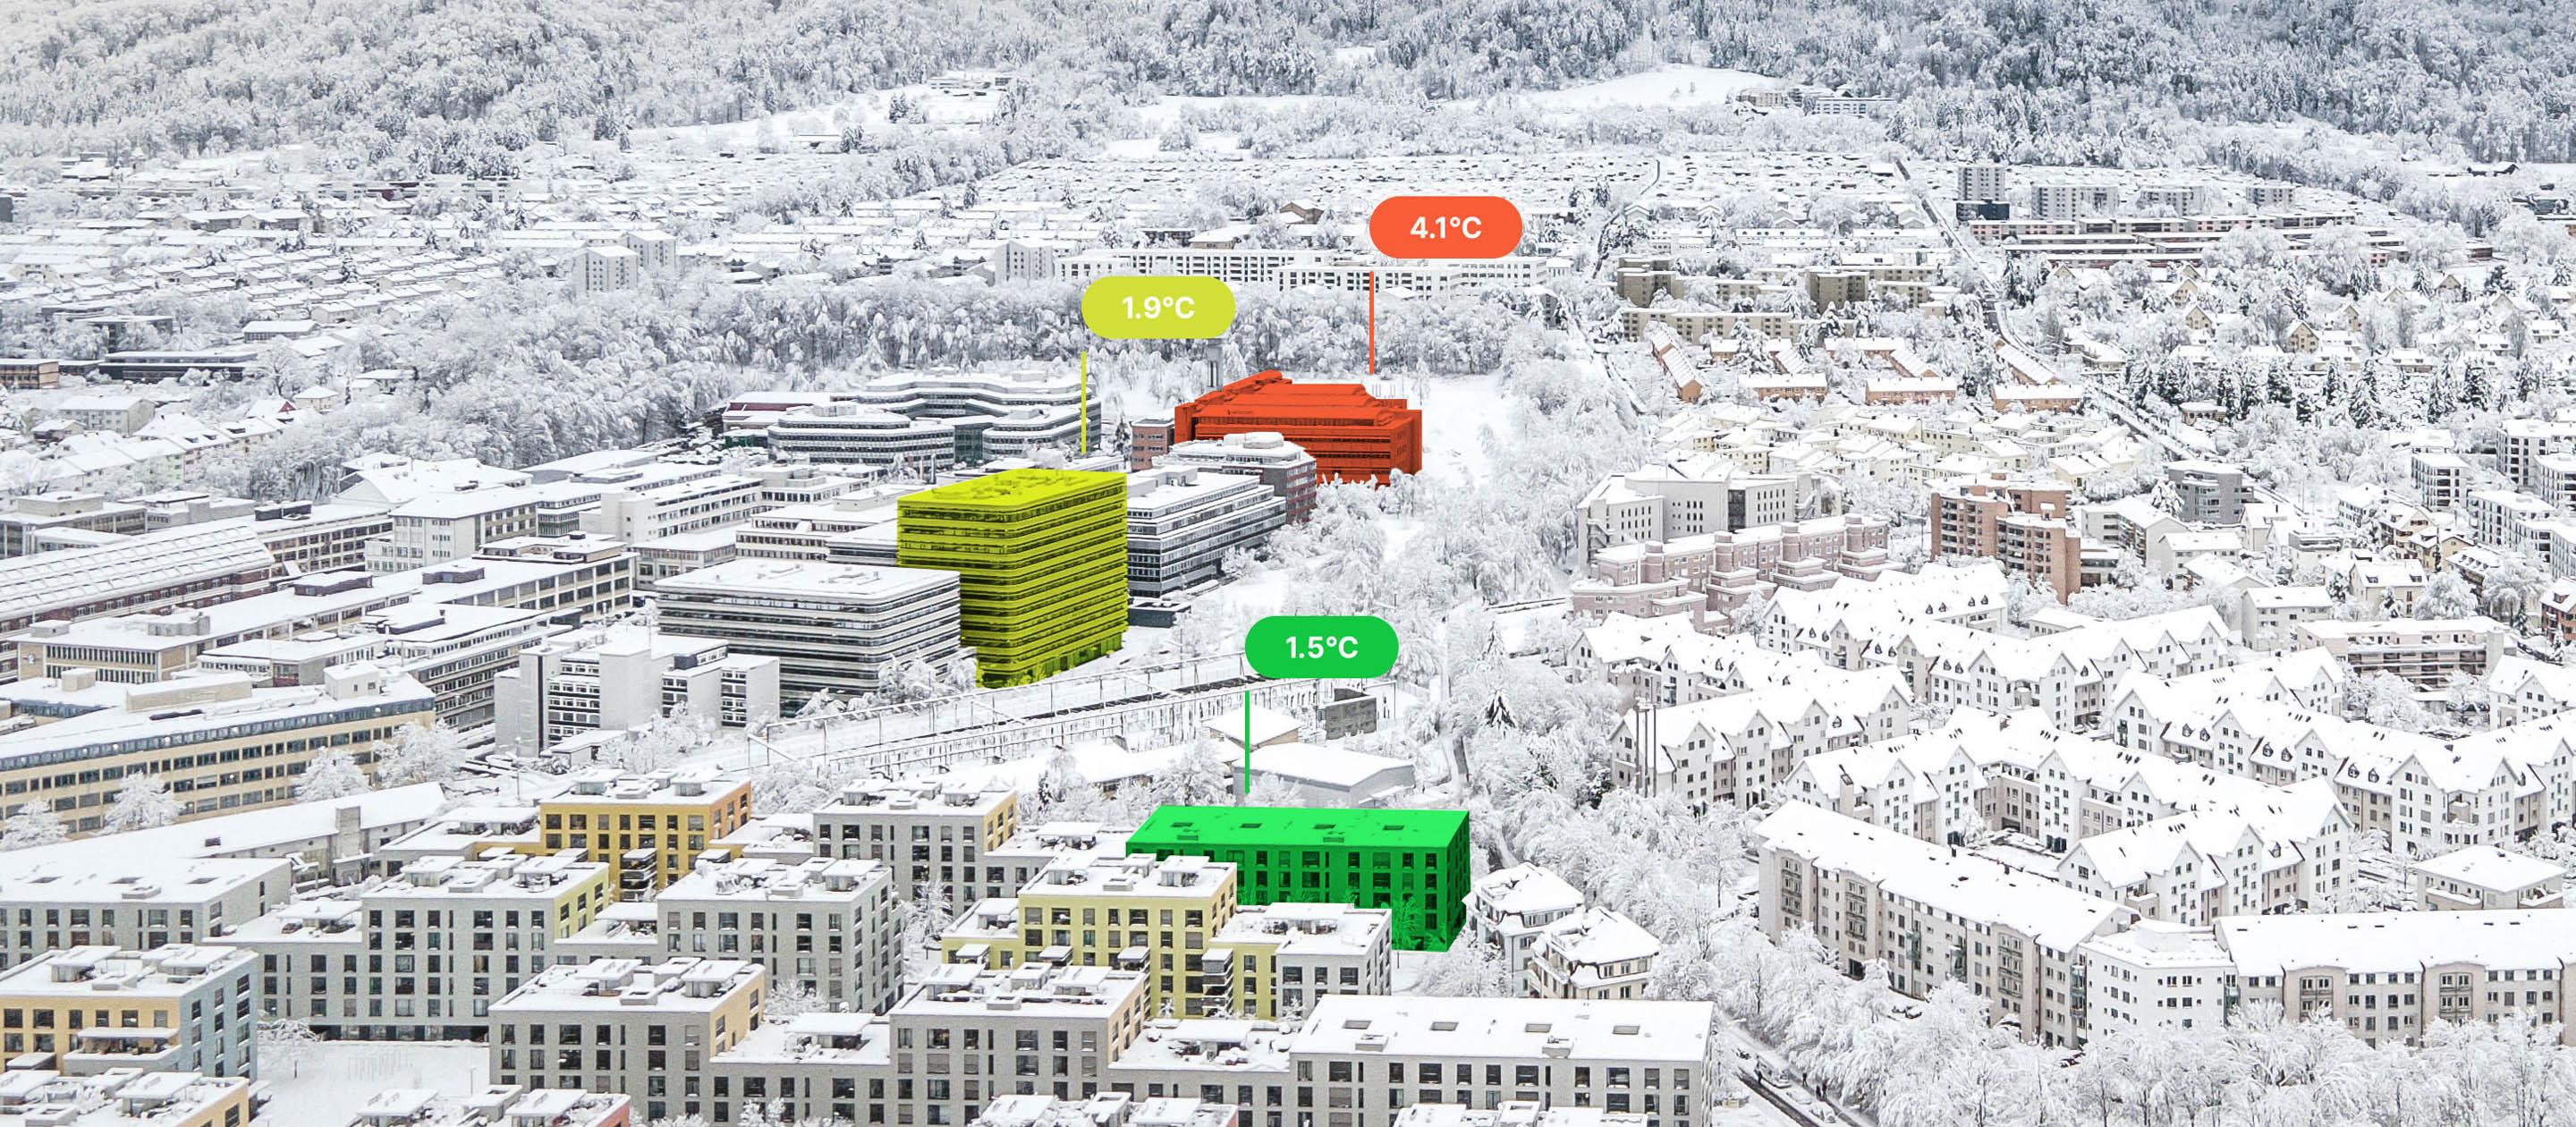 Vista dall'alto di edifici coperti di neve, tre dei quali sono colorati. Uno è rosso con la scritta 4,1 °C, l'altro giallo con 1,9 °C e il terzo verde con 1,5 °C.